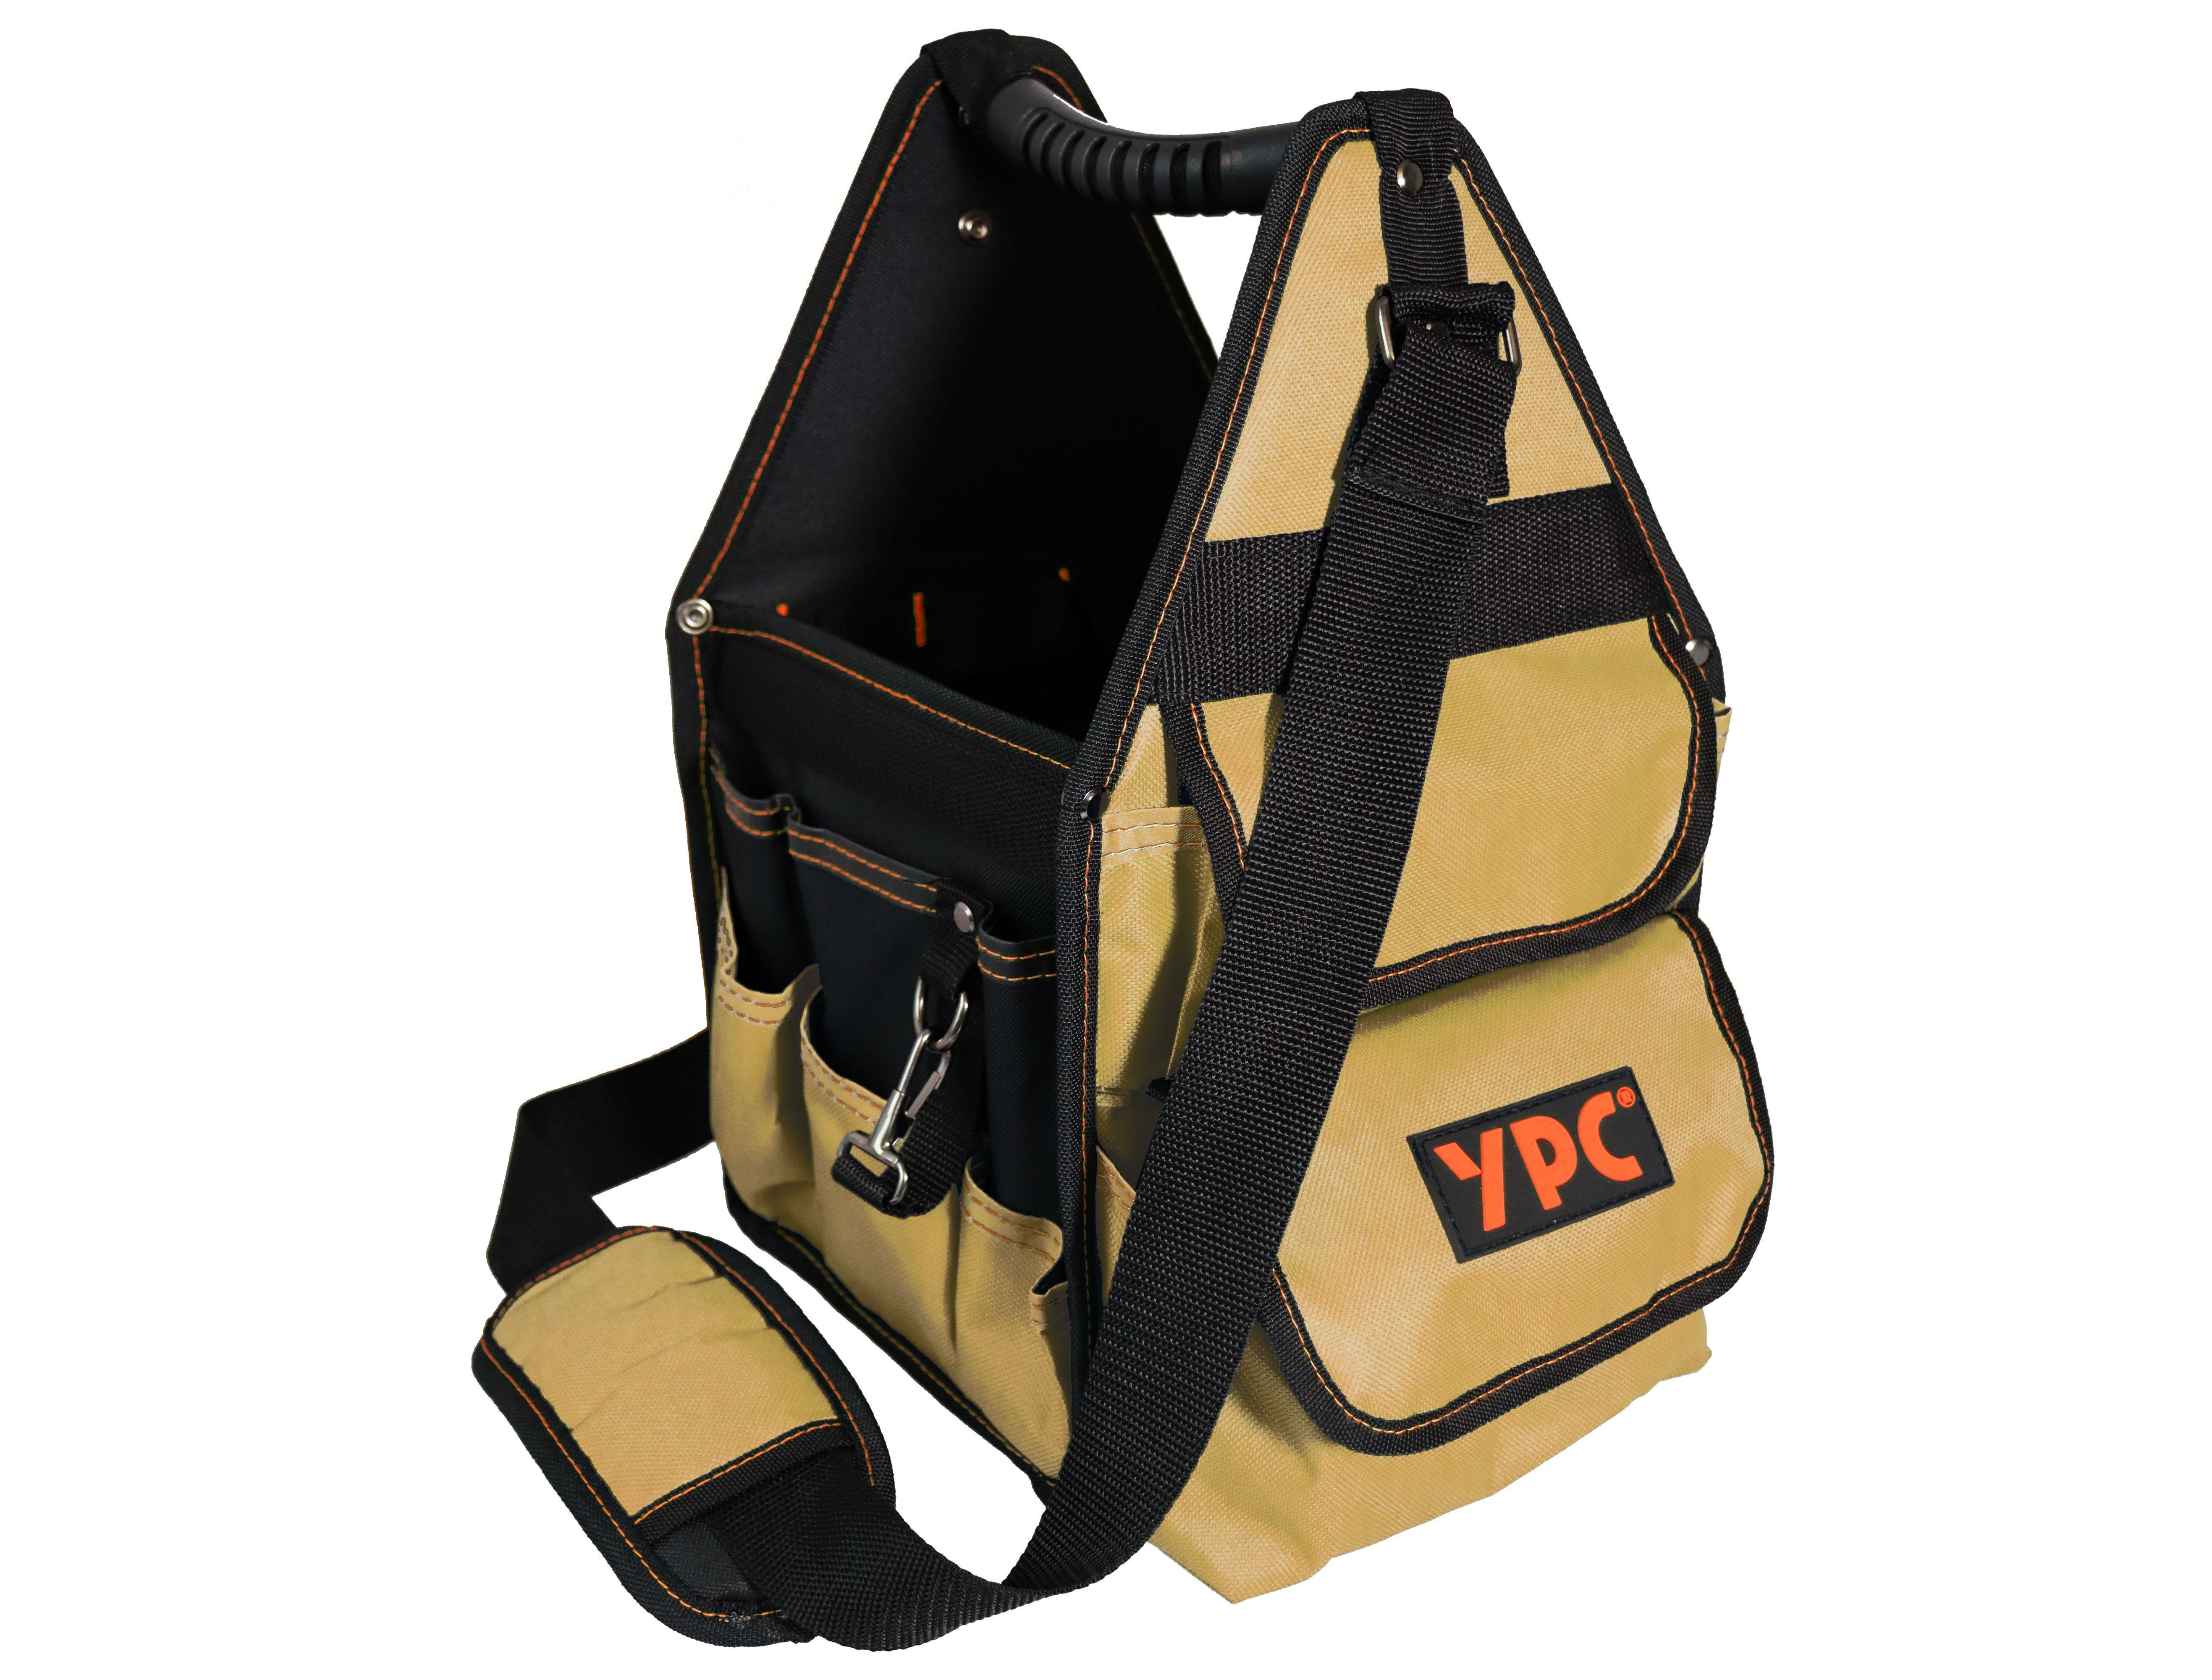 YPC Werkzeugtasche "Henchman" Werkzeugkorb L, offene Werkzeugtasche, 46x23x23cm, 10 kg Tragkraft, Tragetasche für Werkzeug mit Haltern, Fächern und Einschüben Beige